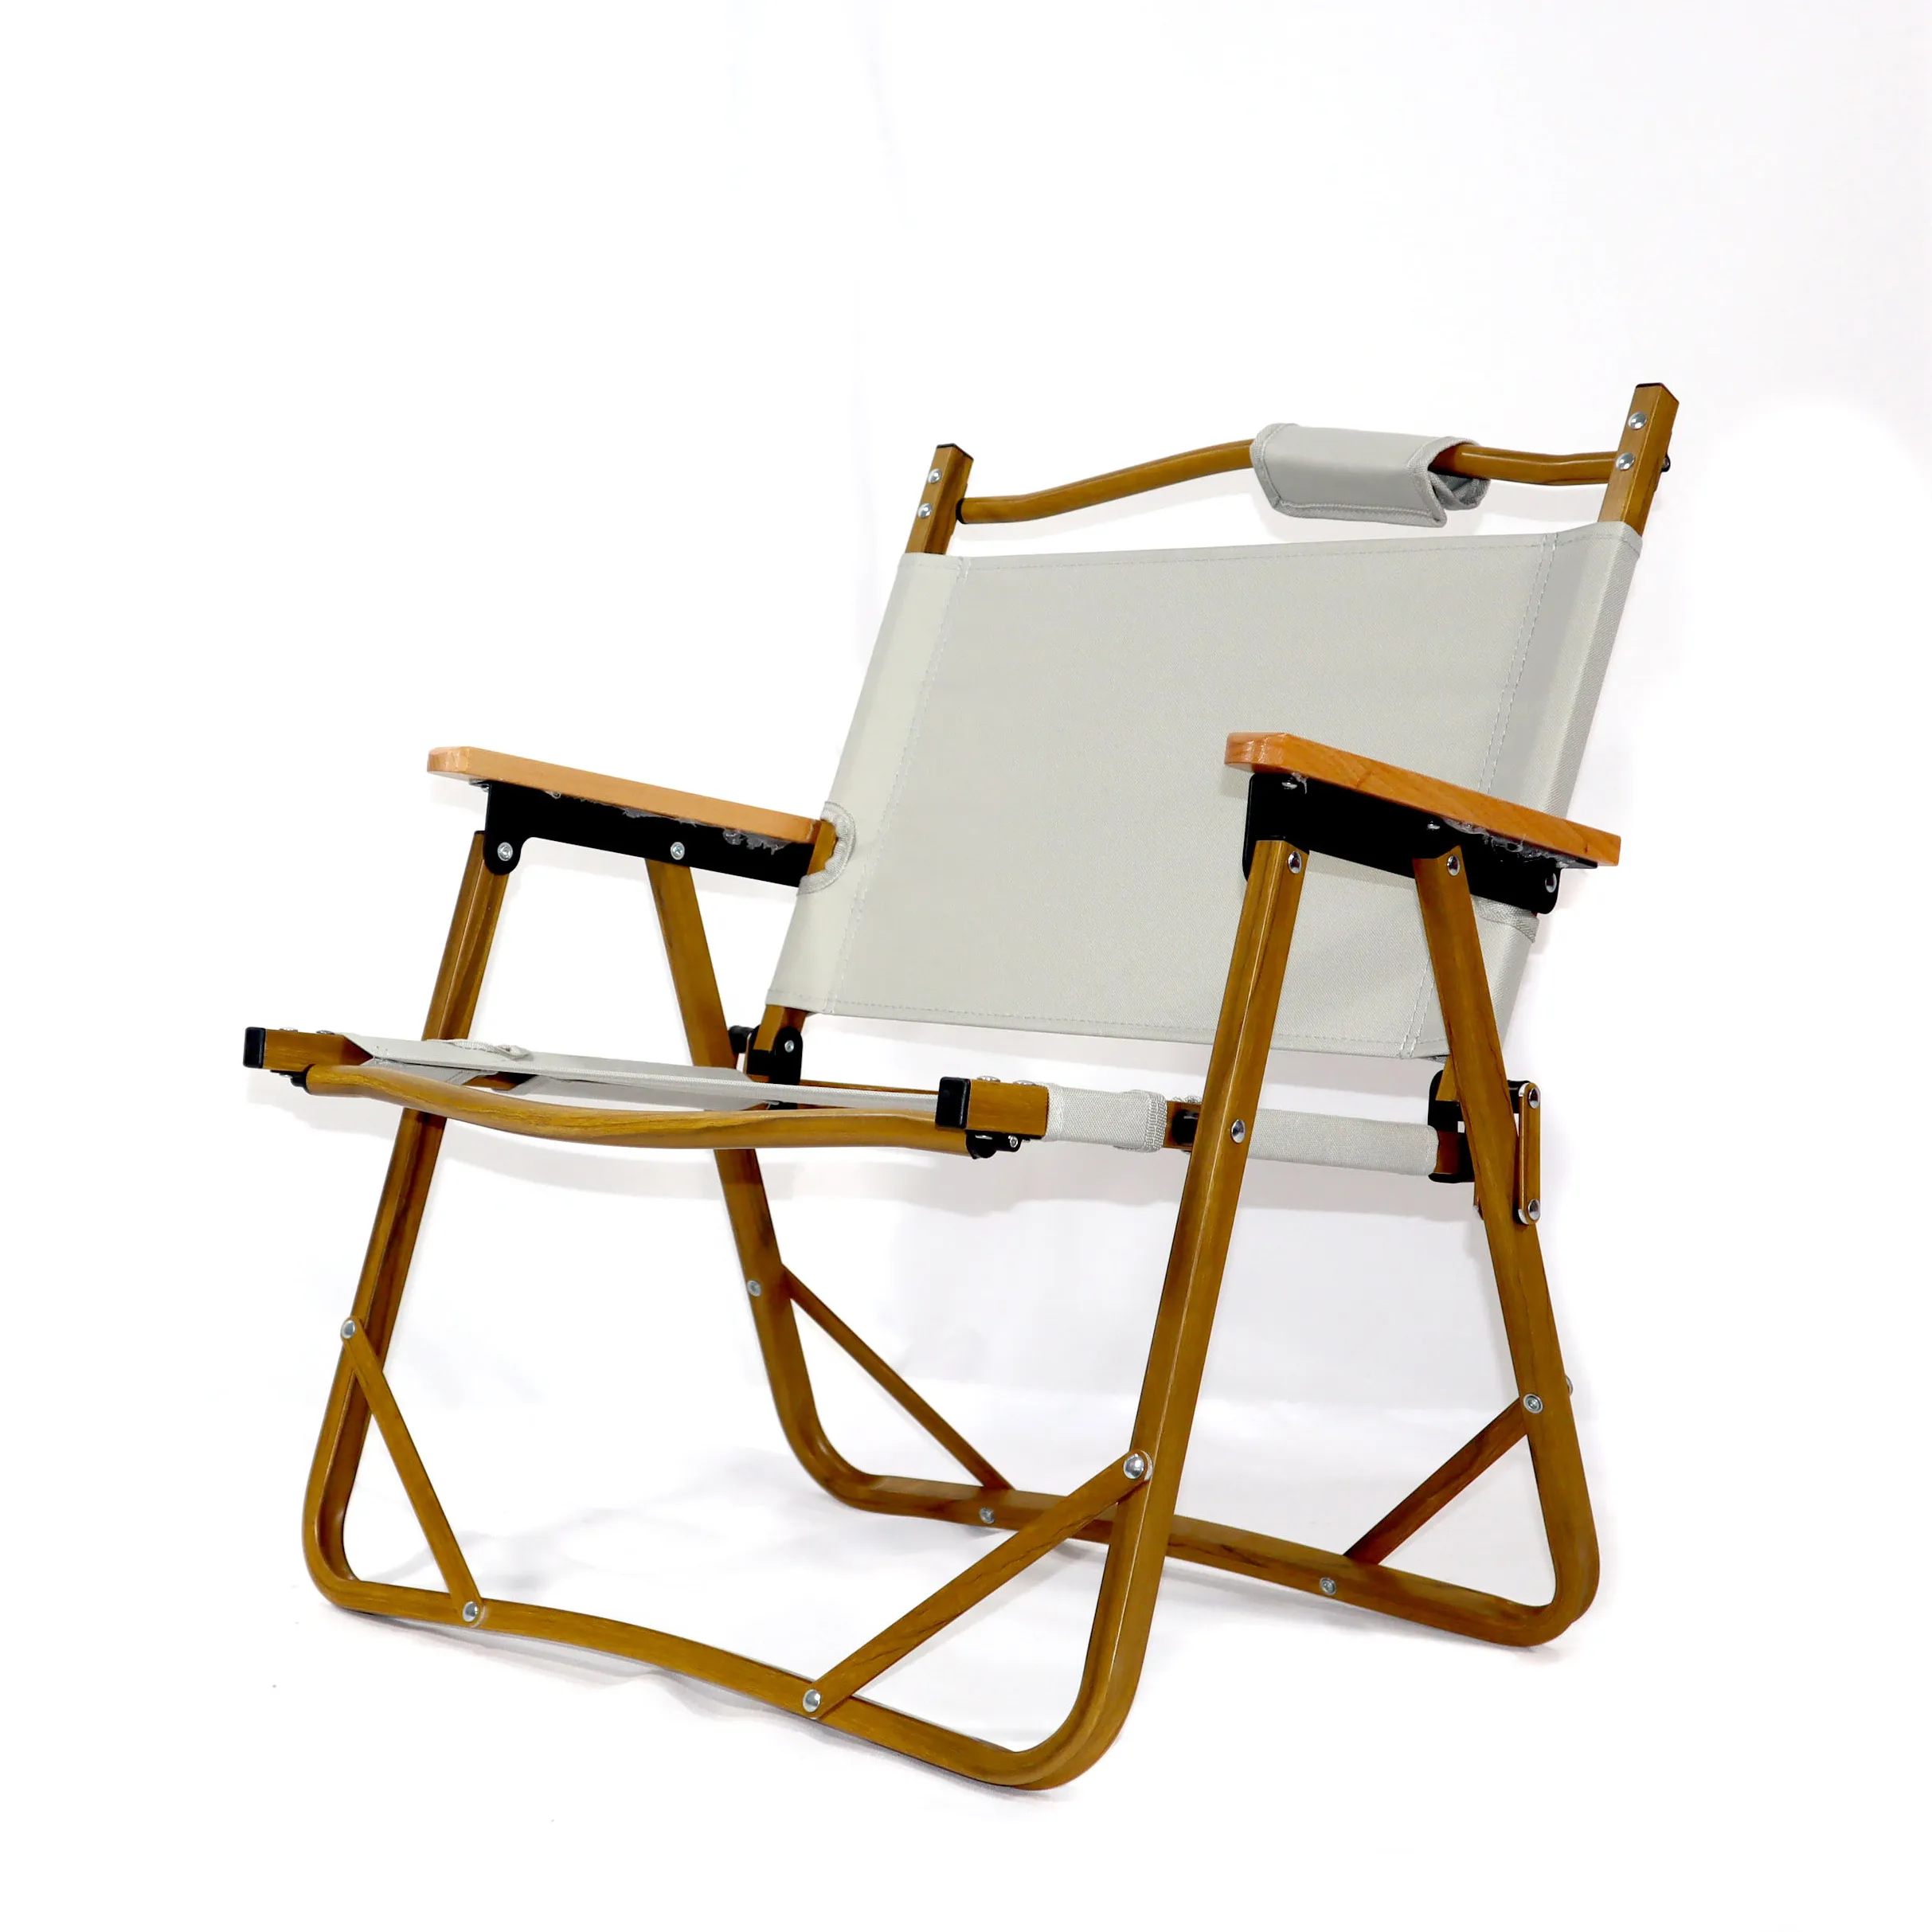 Tabela e cadeiras dobráveis de alumínio dobráveis, portáteis e de design moderno para acampamento